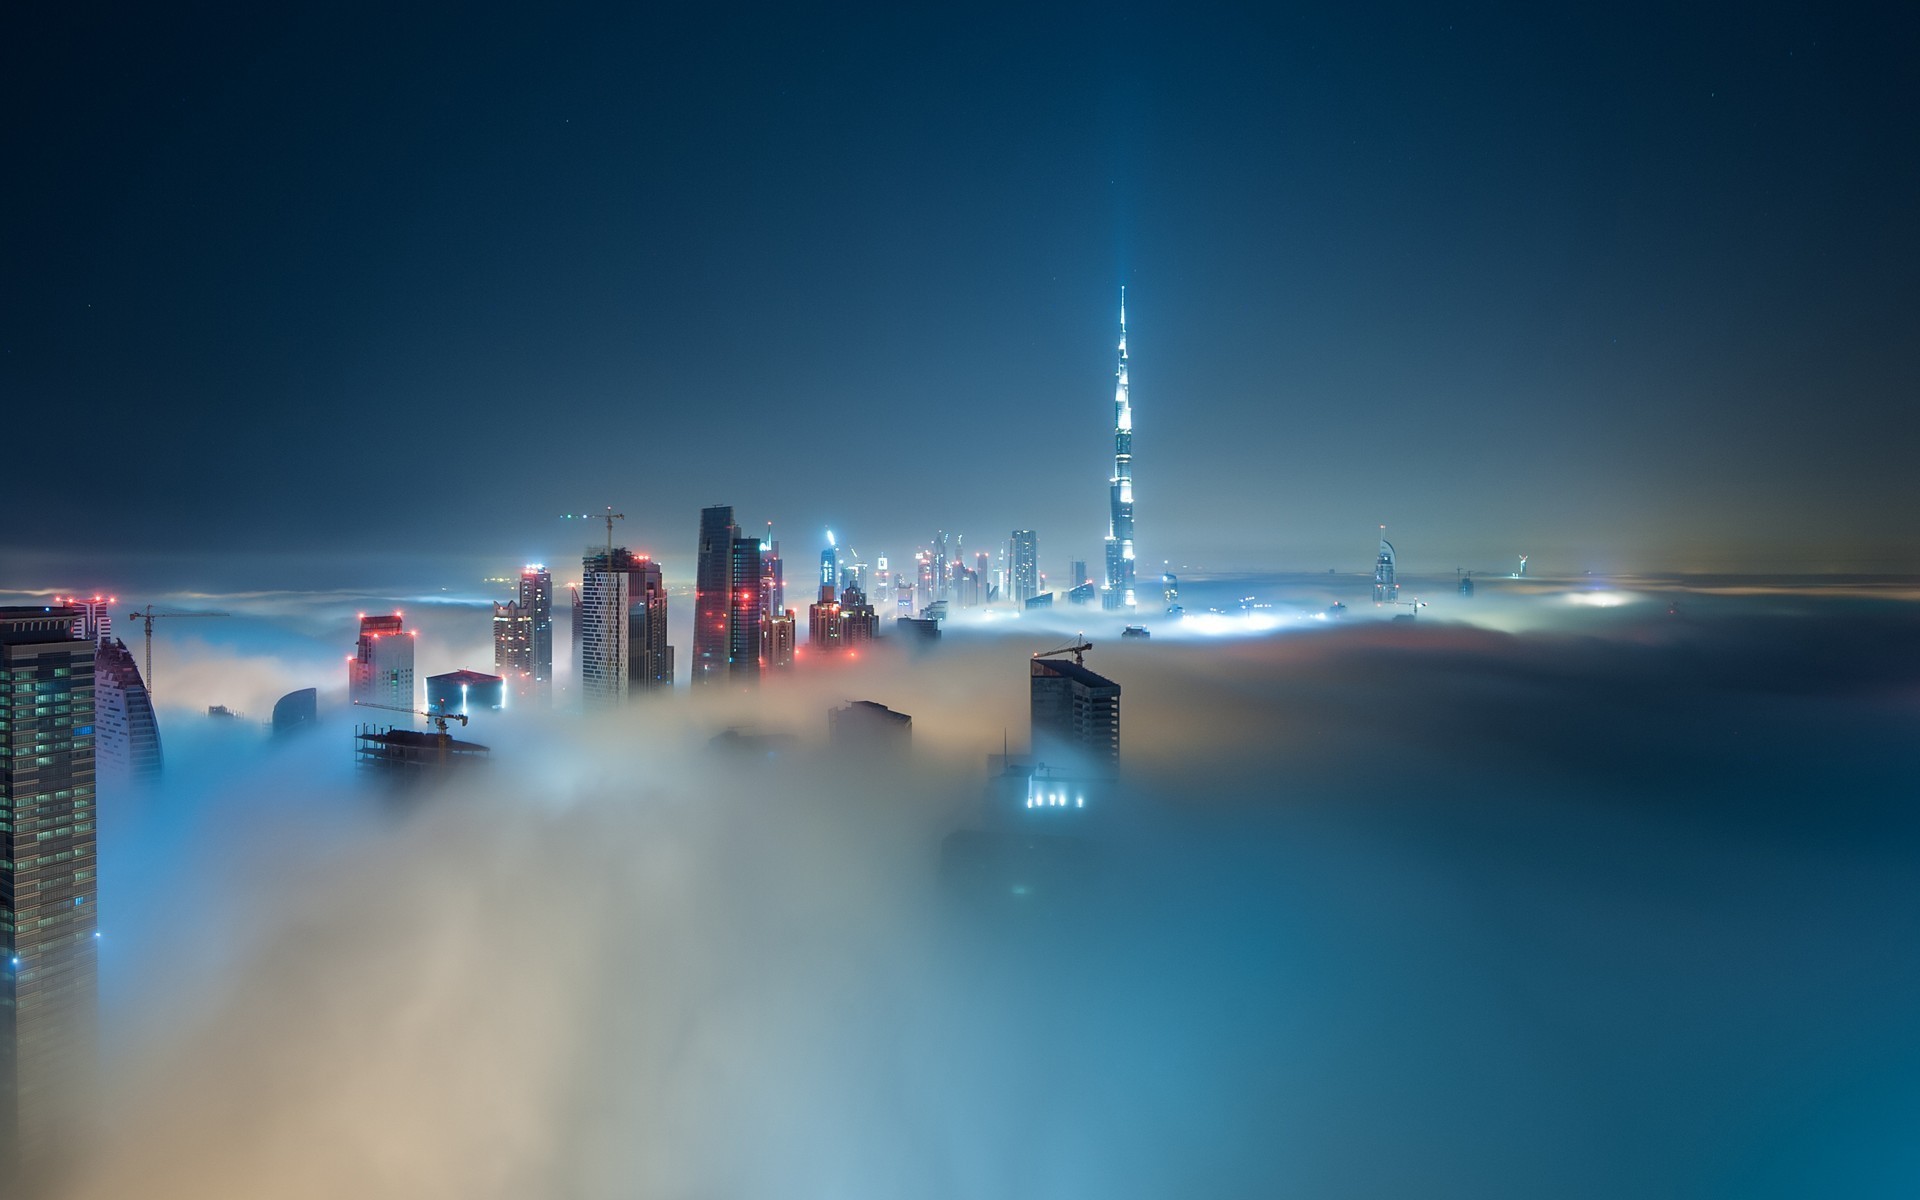 Burj Khalifa Cloud Night - 1920x1200 Wallpaper 